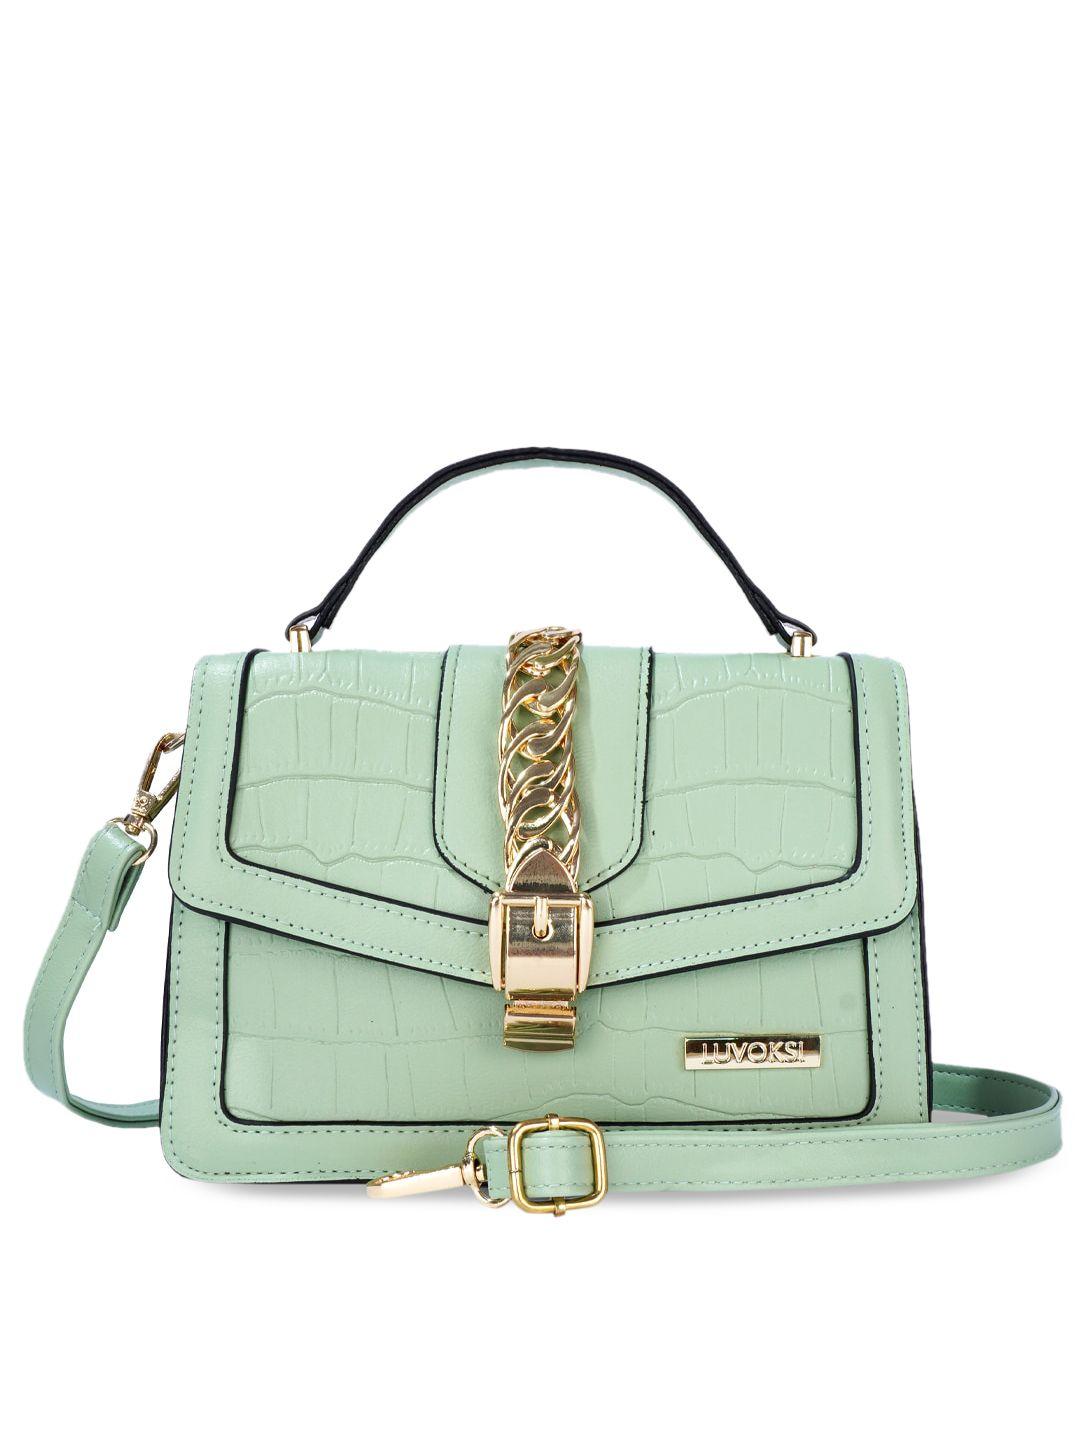 luvoksi green textured structured satchel